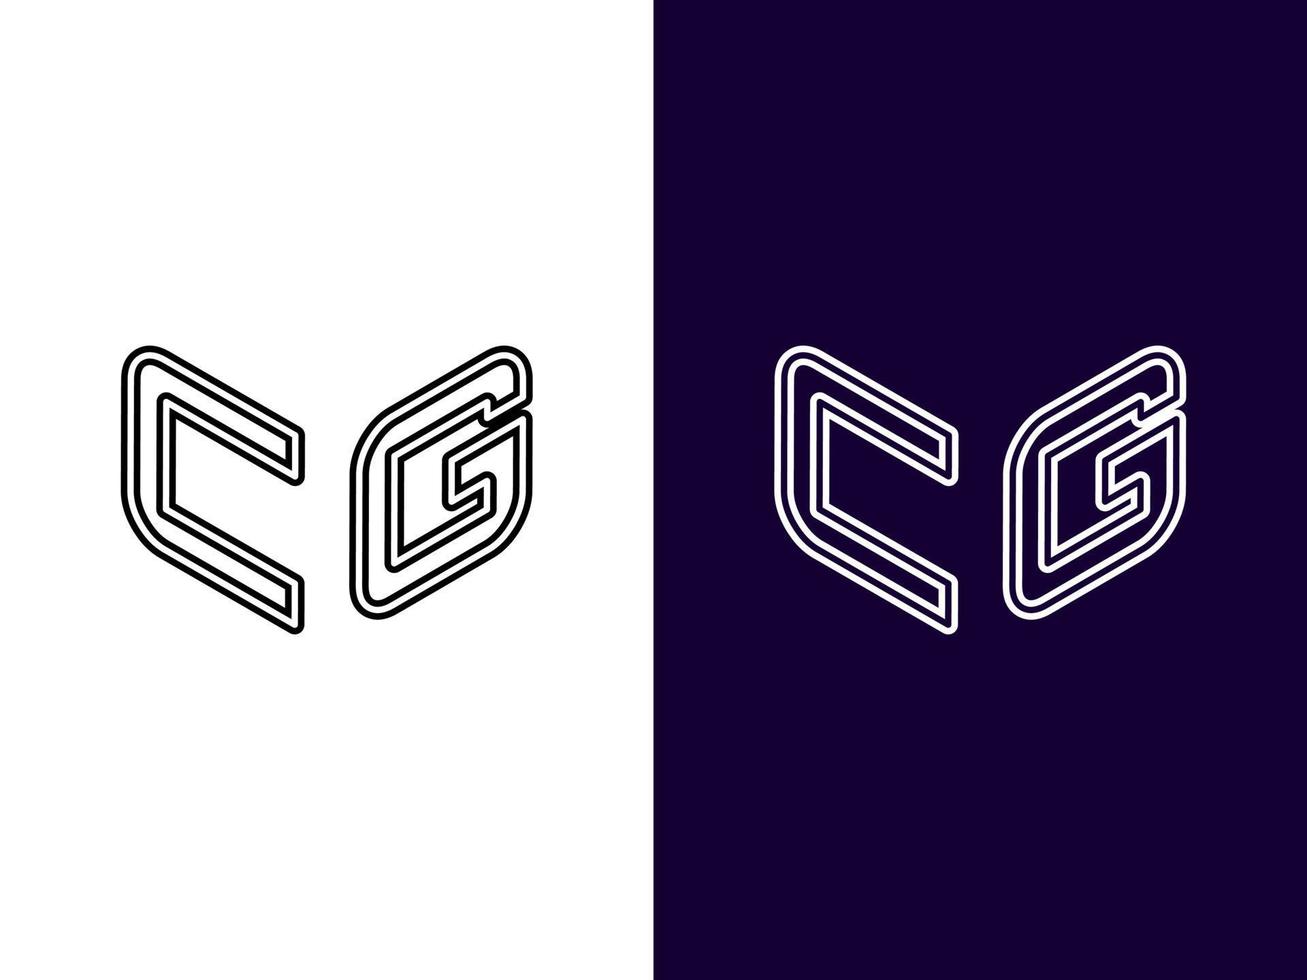 letra inicial cg design de logotipo 3d minimalista e moderno vetor